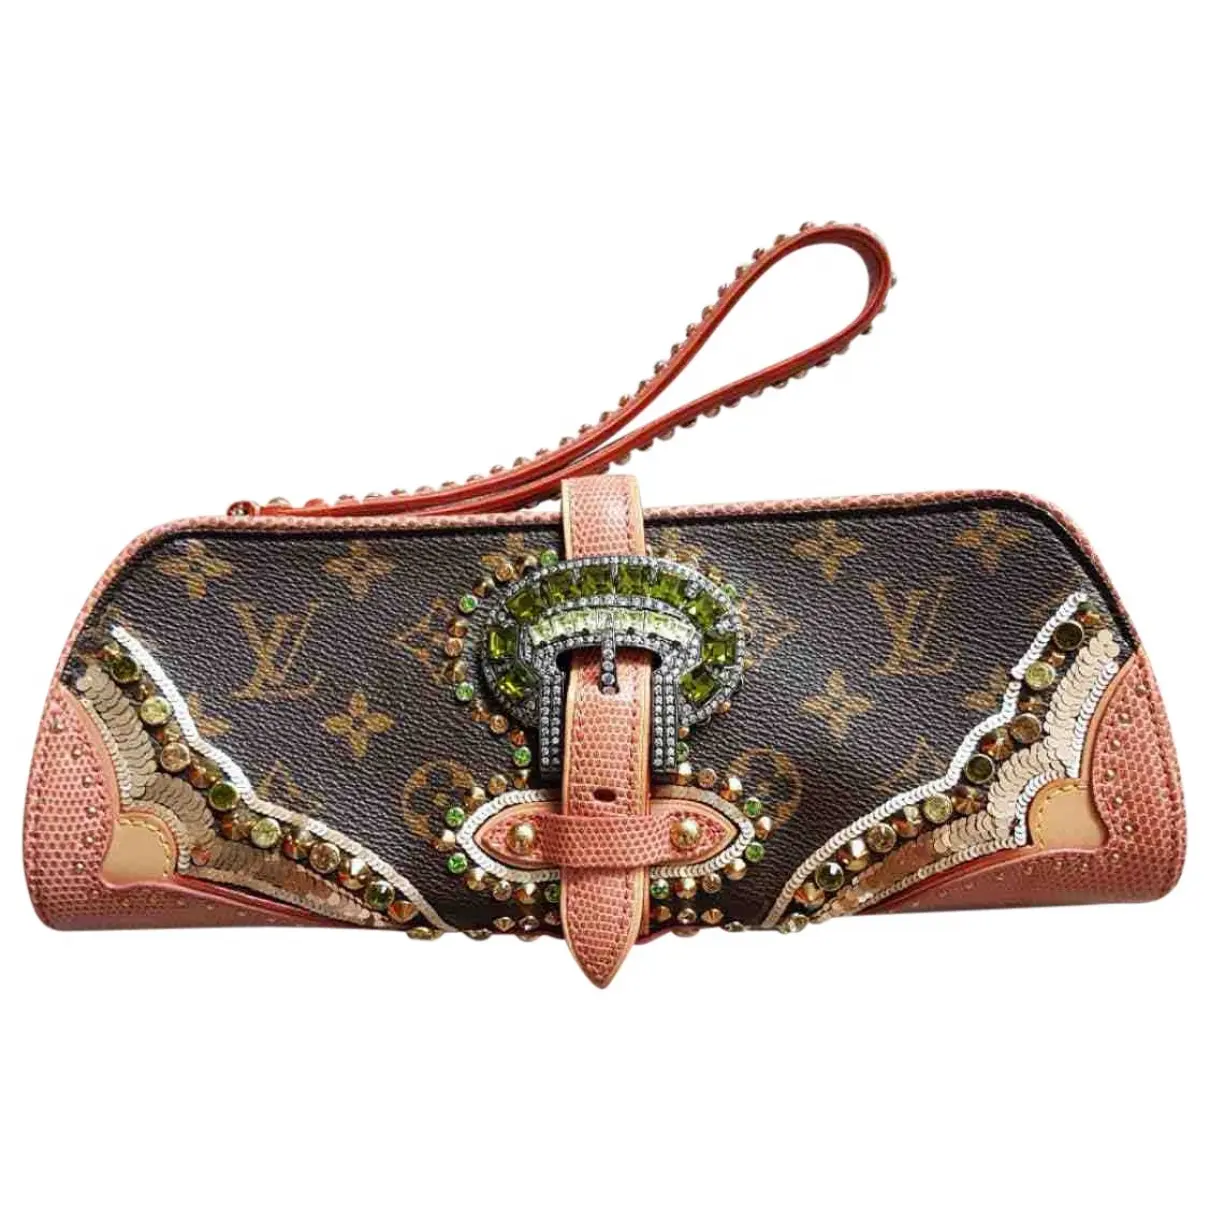 Lizard clutch bag Louis Vuitton